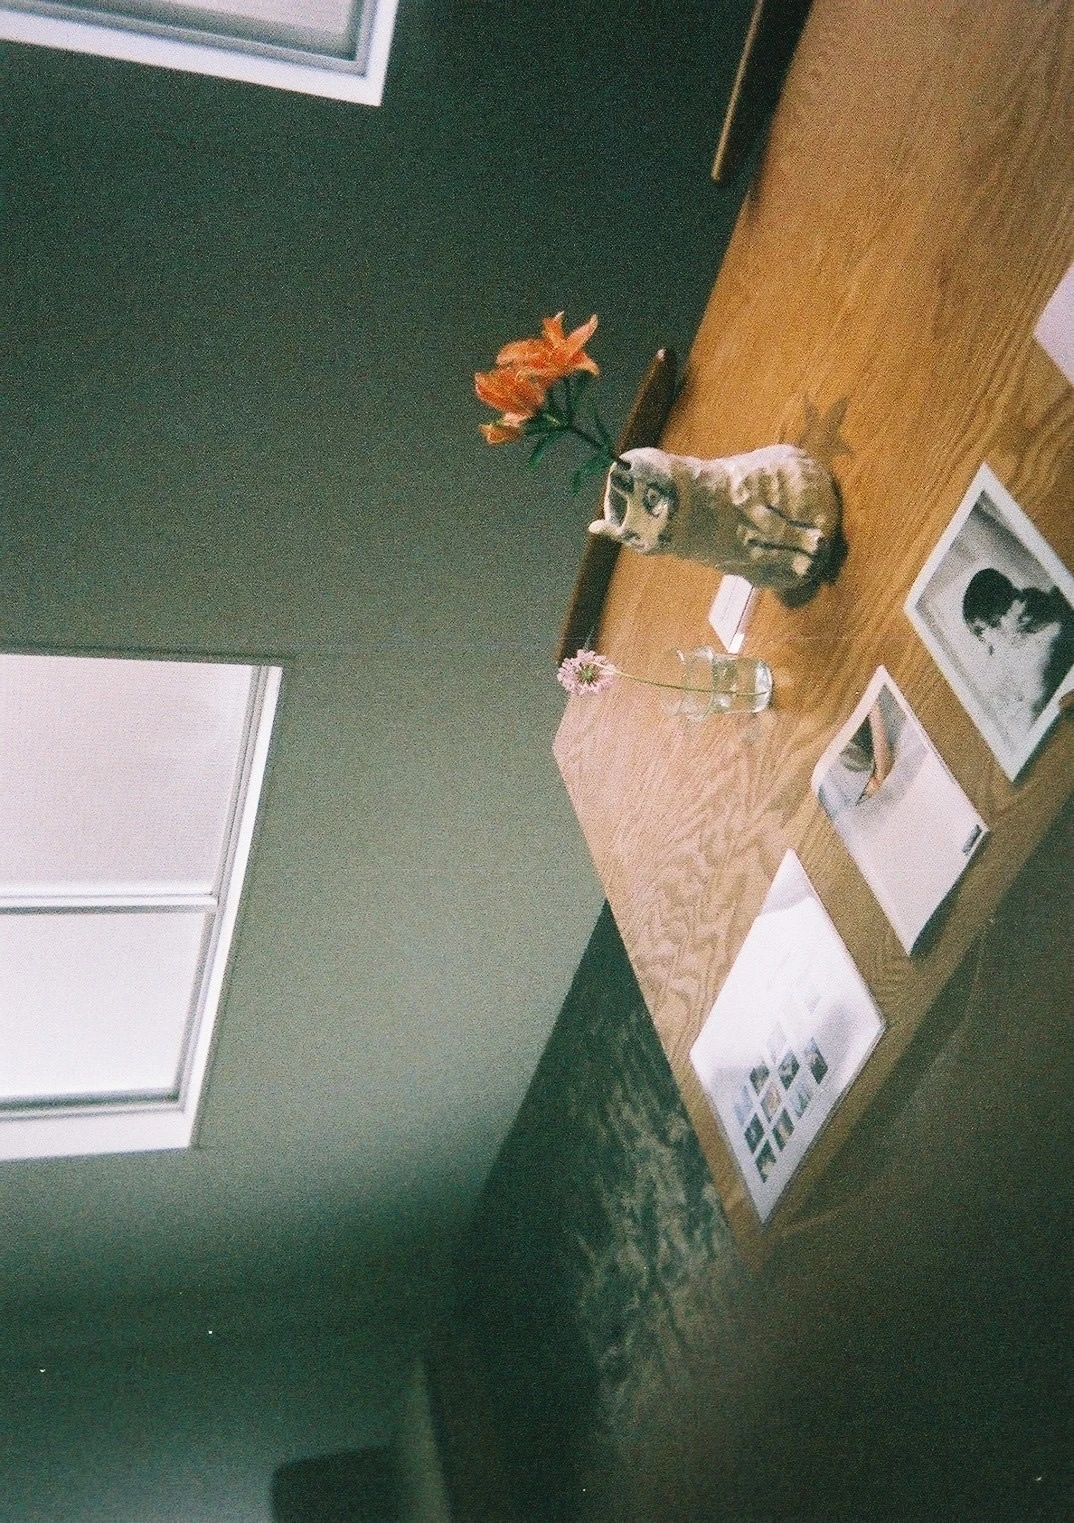 フィルムカメラで撮った写真展。オレンジ色の花が花瓶に生けられています。